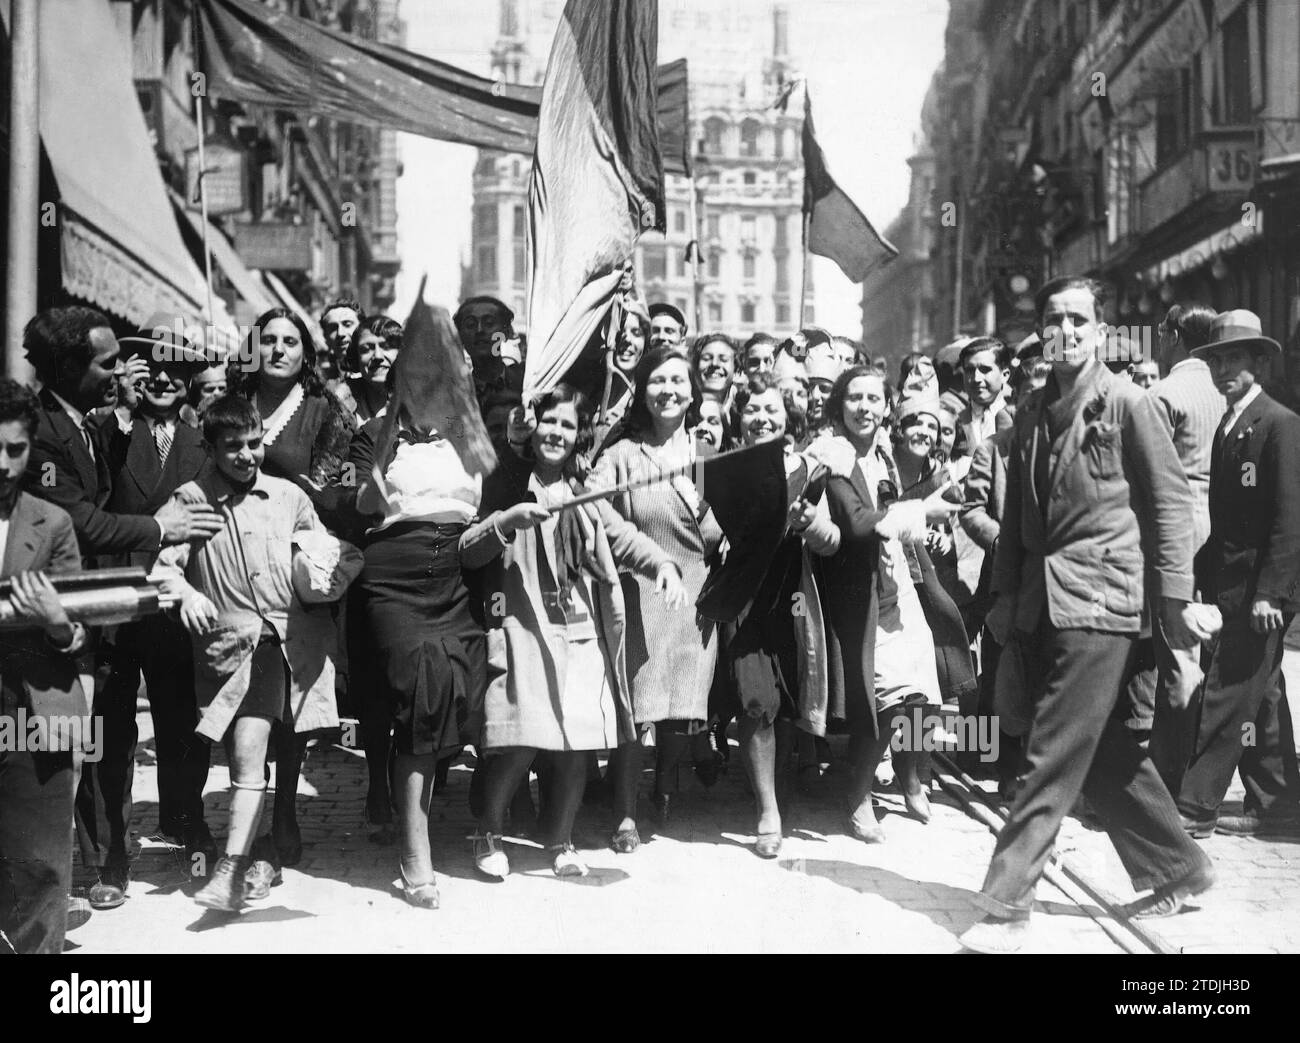 Madrid, 14/04/1931. Proclamazione della seconda Repubblica. Nell'immagine, un gruppo di lavoratori che portano le bandiere tricolore nelle loro mani. Crediti: Album / Archivo ABC / Alfonso Foto Stock